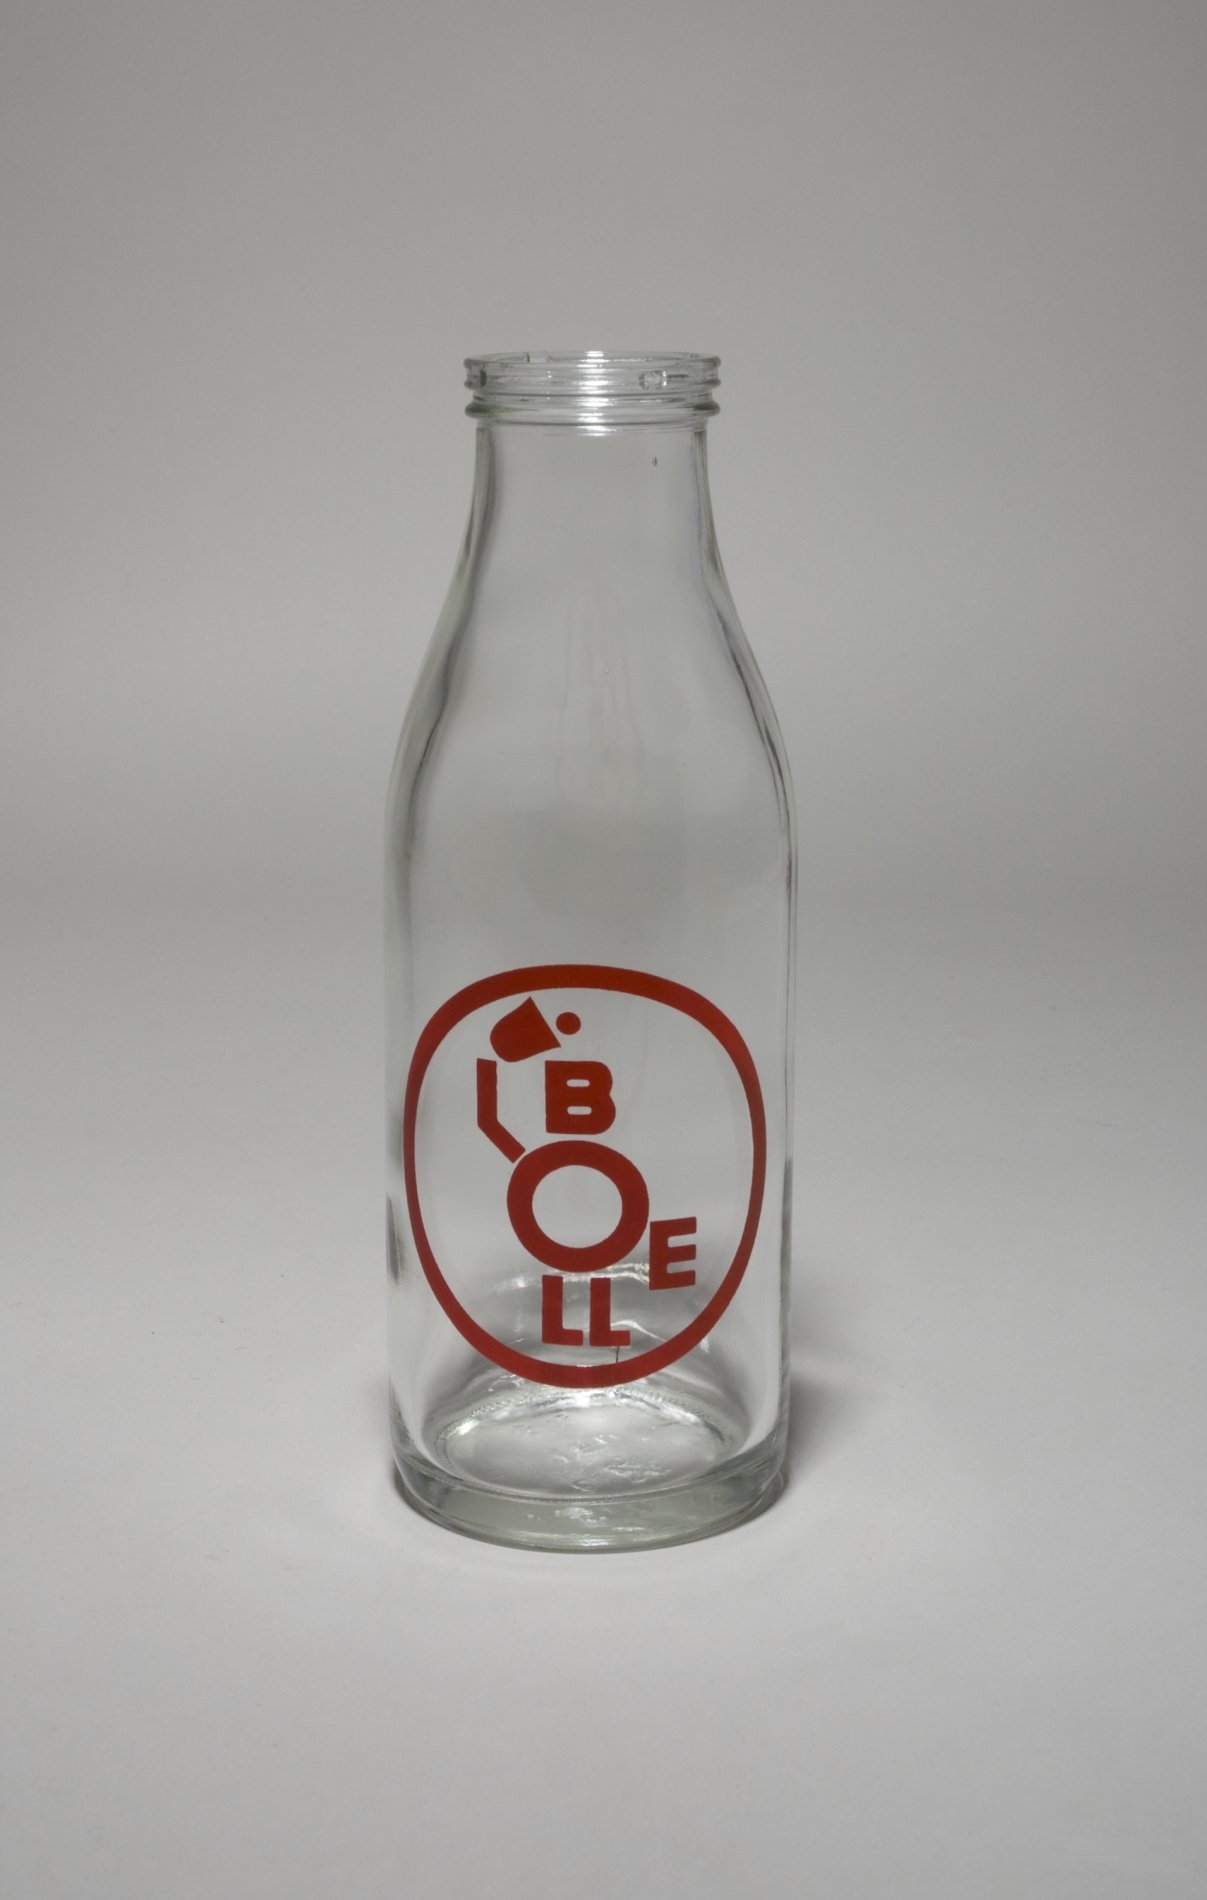 Zwei Milchflaschen "Bolle" (Stiftung Domäne Dahlem - Landgut und Museum, Weiternutzung nur mit Genehmigung des Museums CC BY-NC-SA)